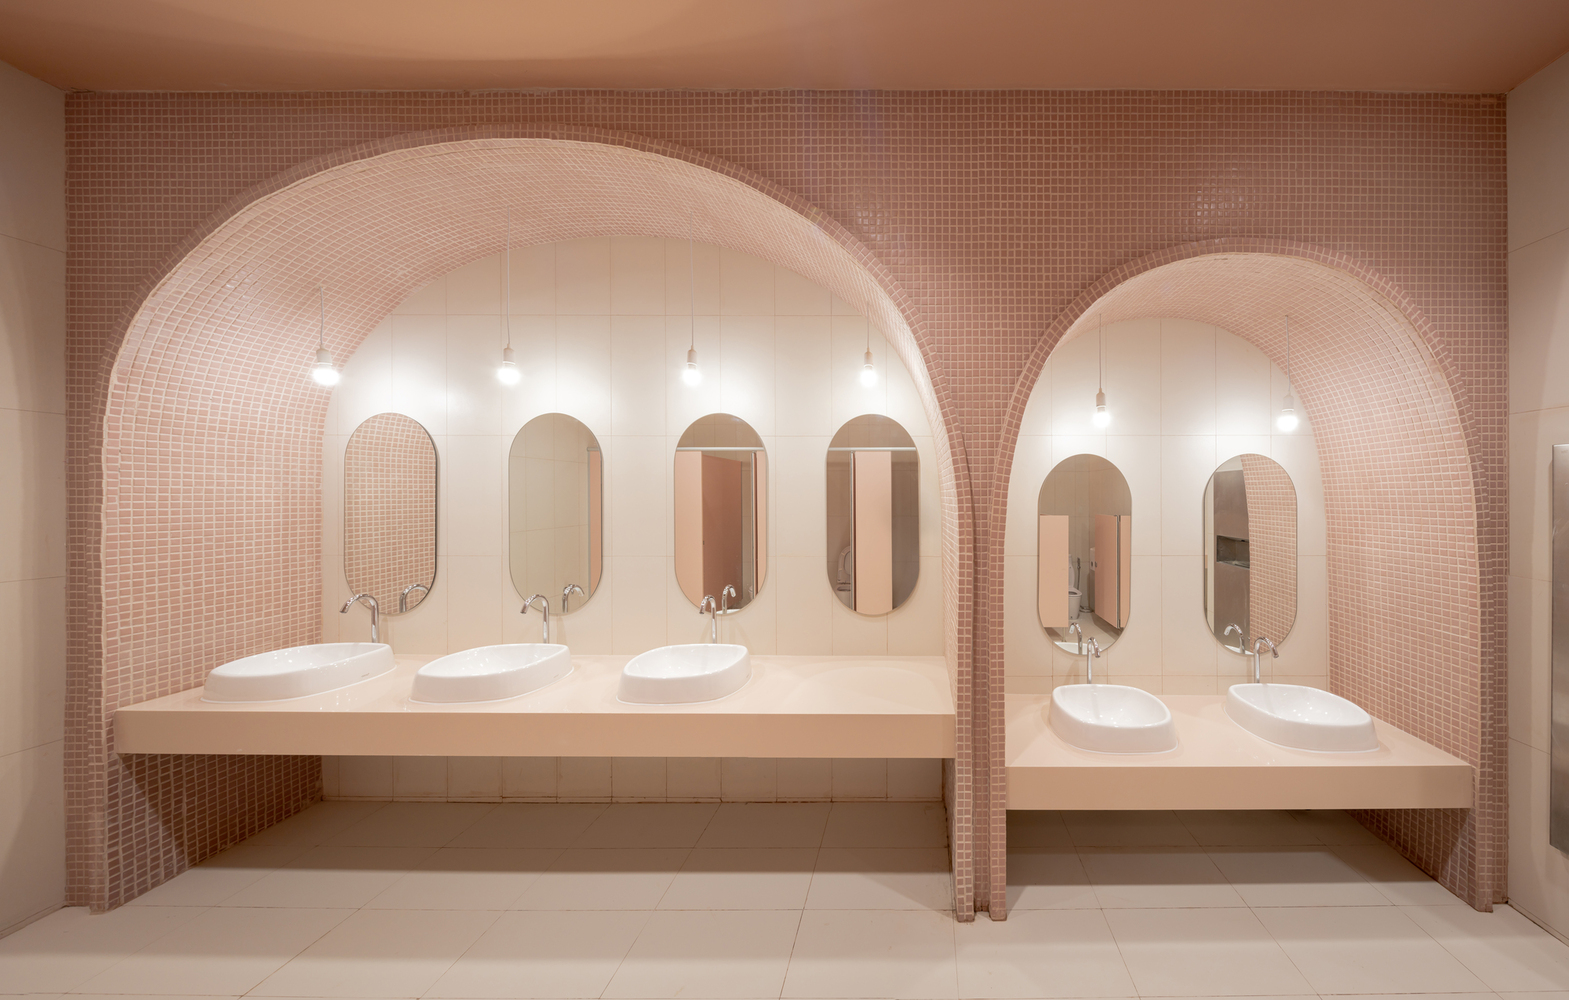 nhà vệ sinh với kiến trúc hình vòm, tường ốp gạch chỉ màu hồng đất, gương bầu dục, bồn rửa sứ trắng